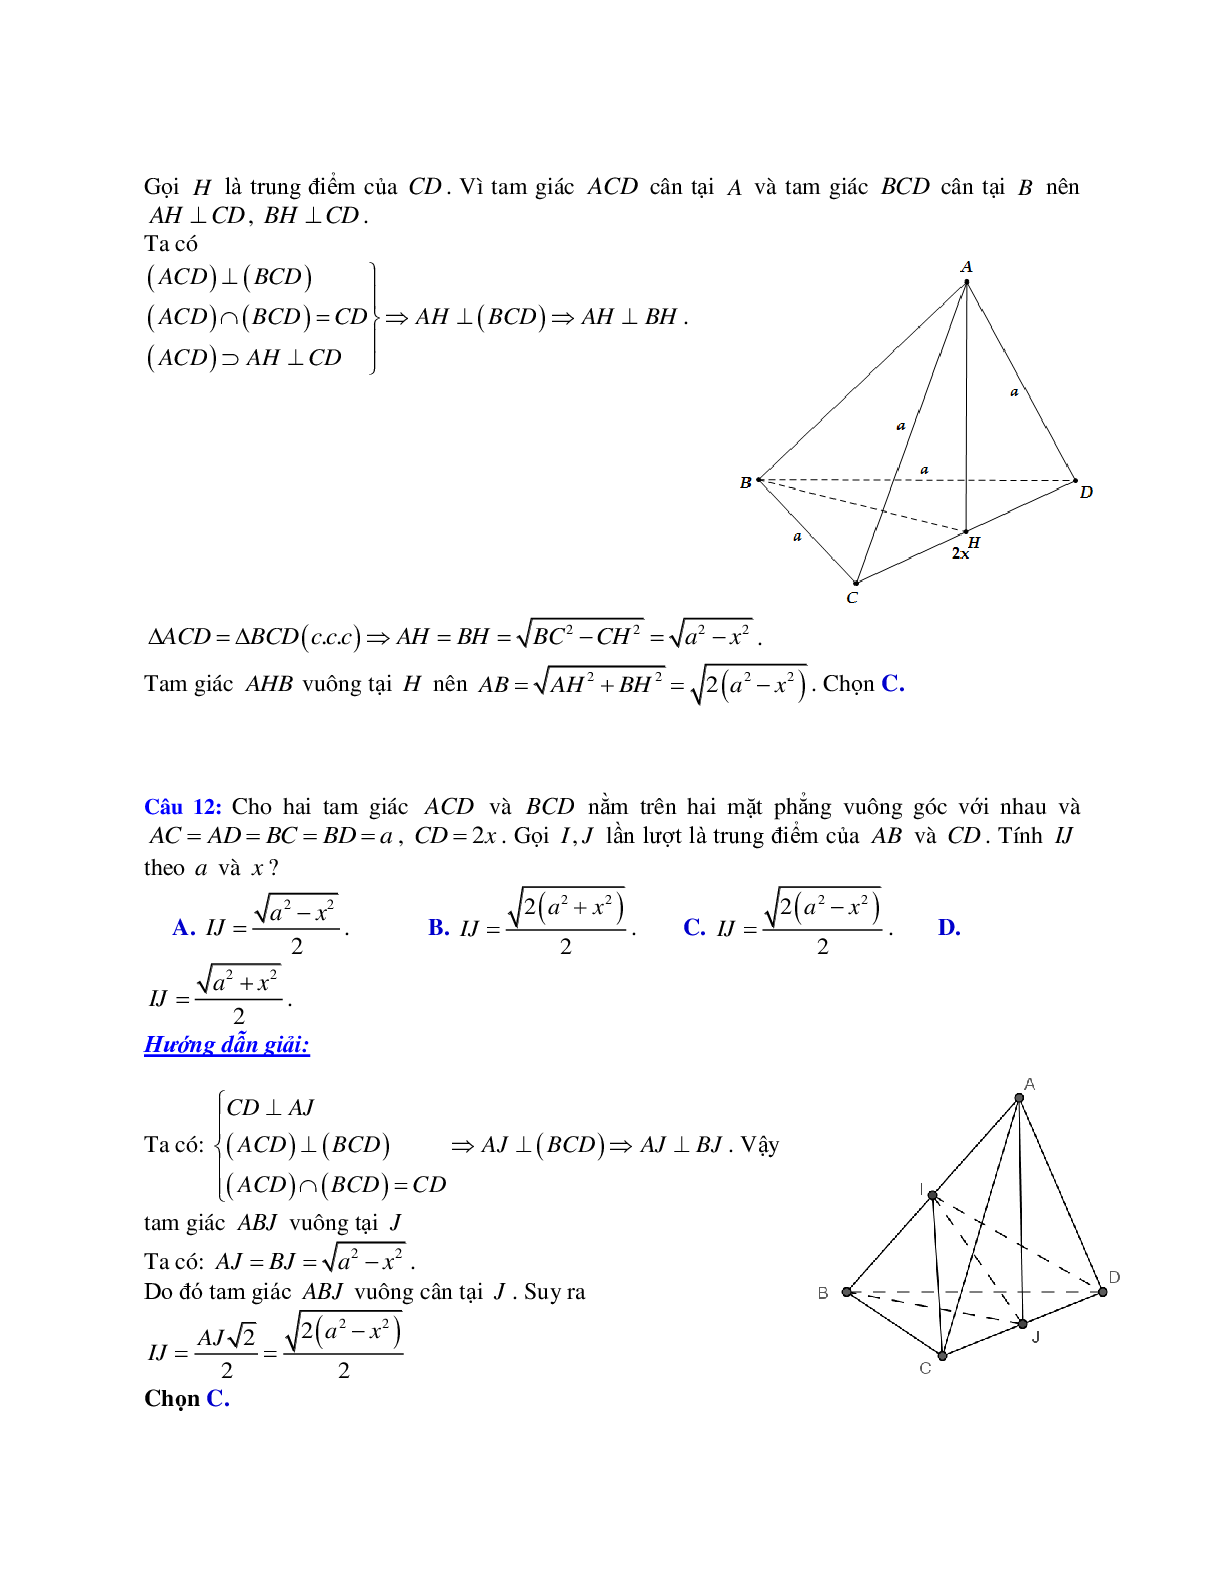 Phương pháp giải và bài tập về Cách tính độ dài đoạn thẳng, diện tích hình chiếu, chu vi và diện tích đa giác có lời giải (trang 7)